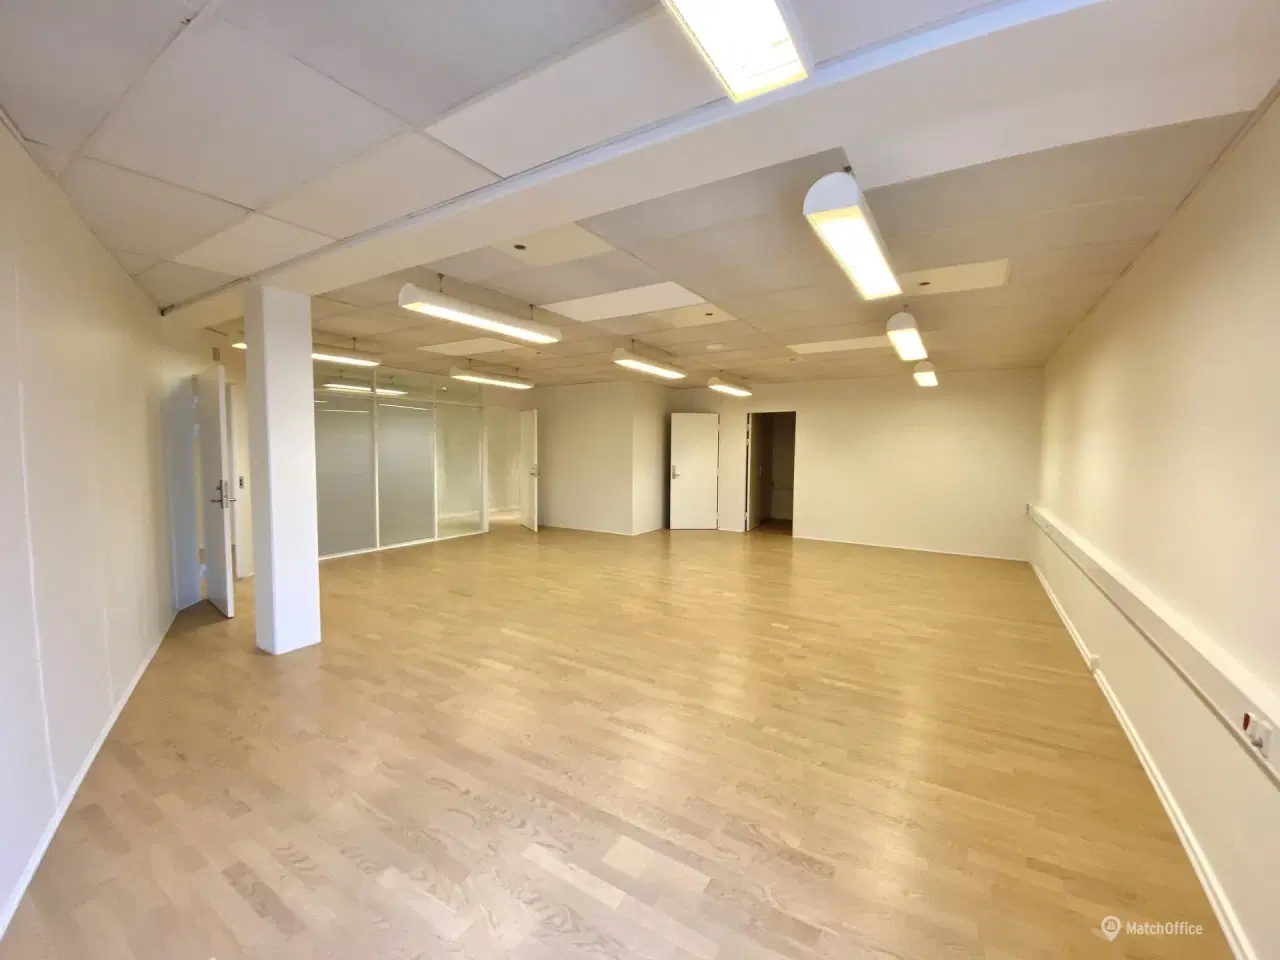 Billede 11 - 210 m² kontorlokaler udlejes i Middelfart Midtpunkt